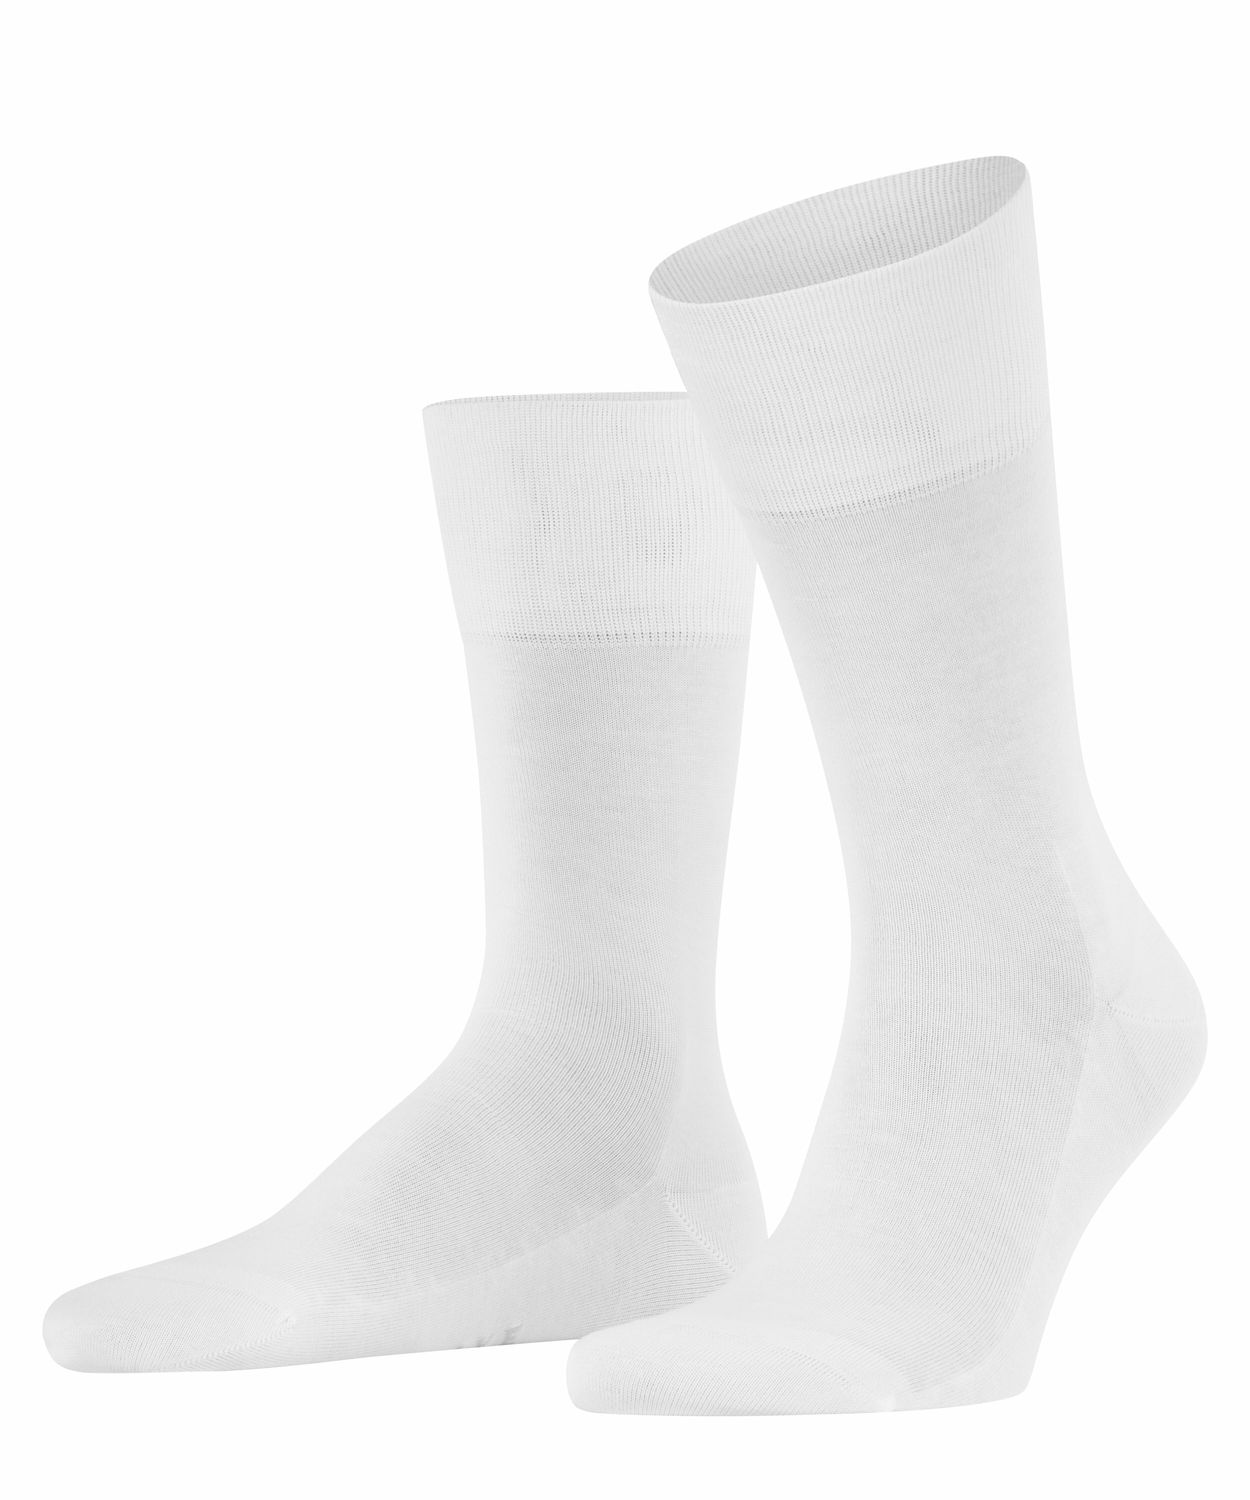 Falke Herren Socken Tiago Hersteller: Falke Bestellnummer:4004757896837